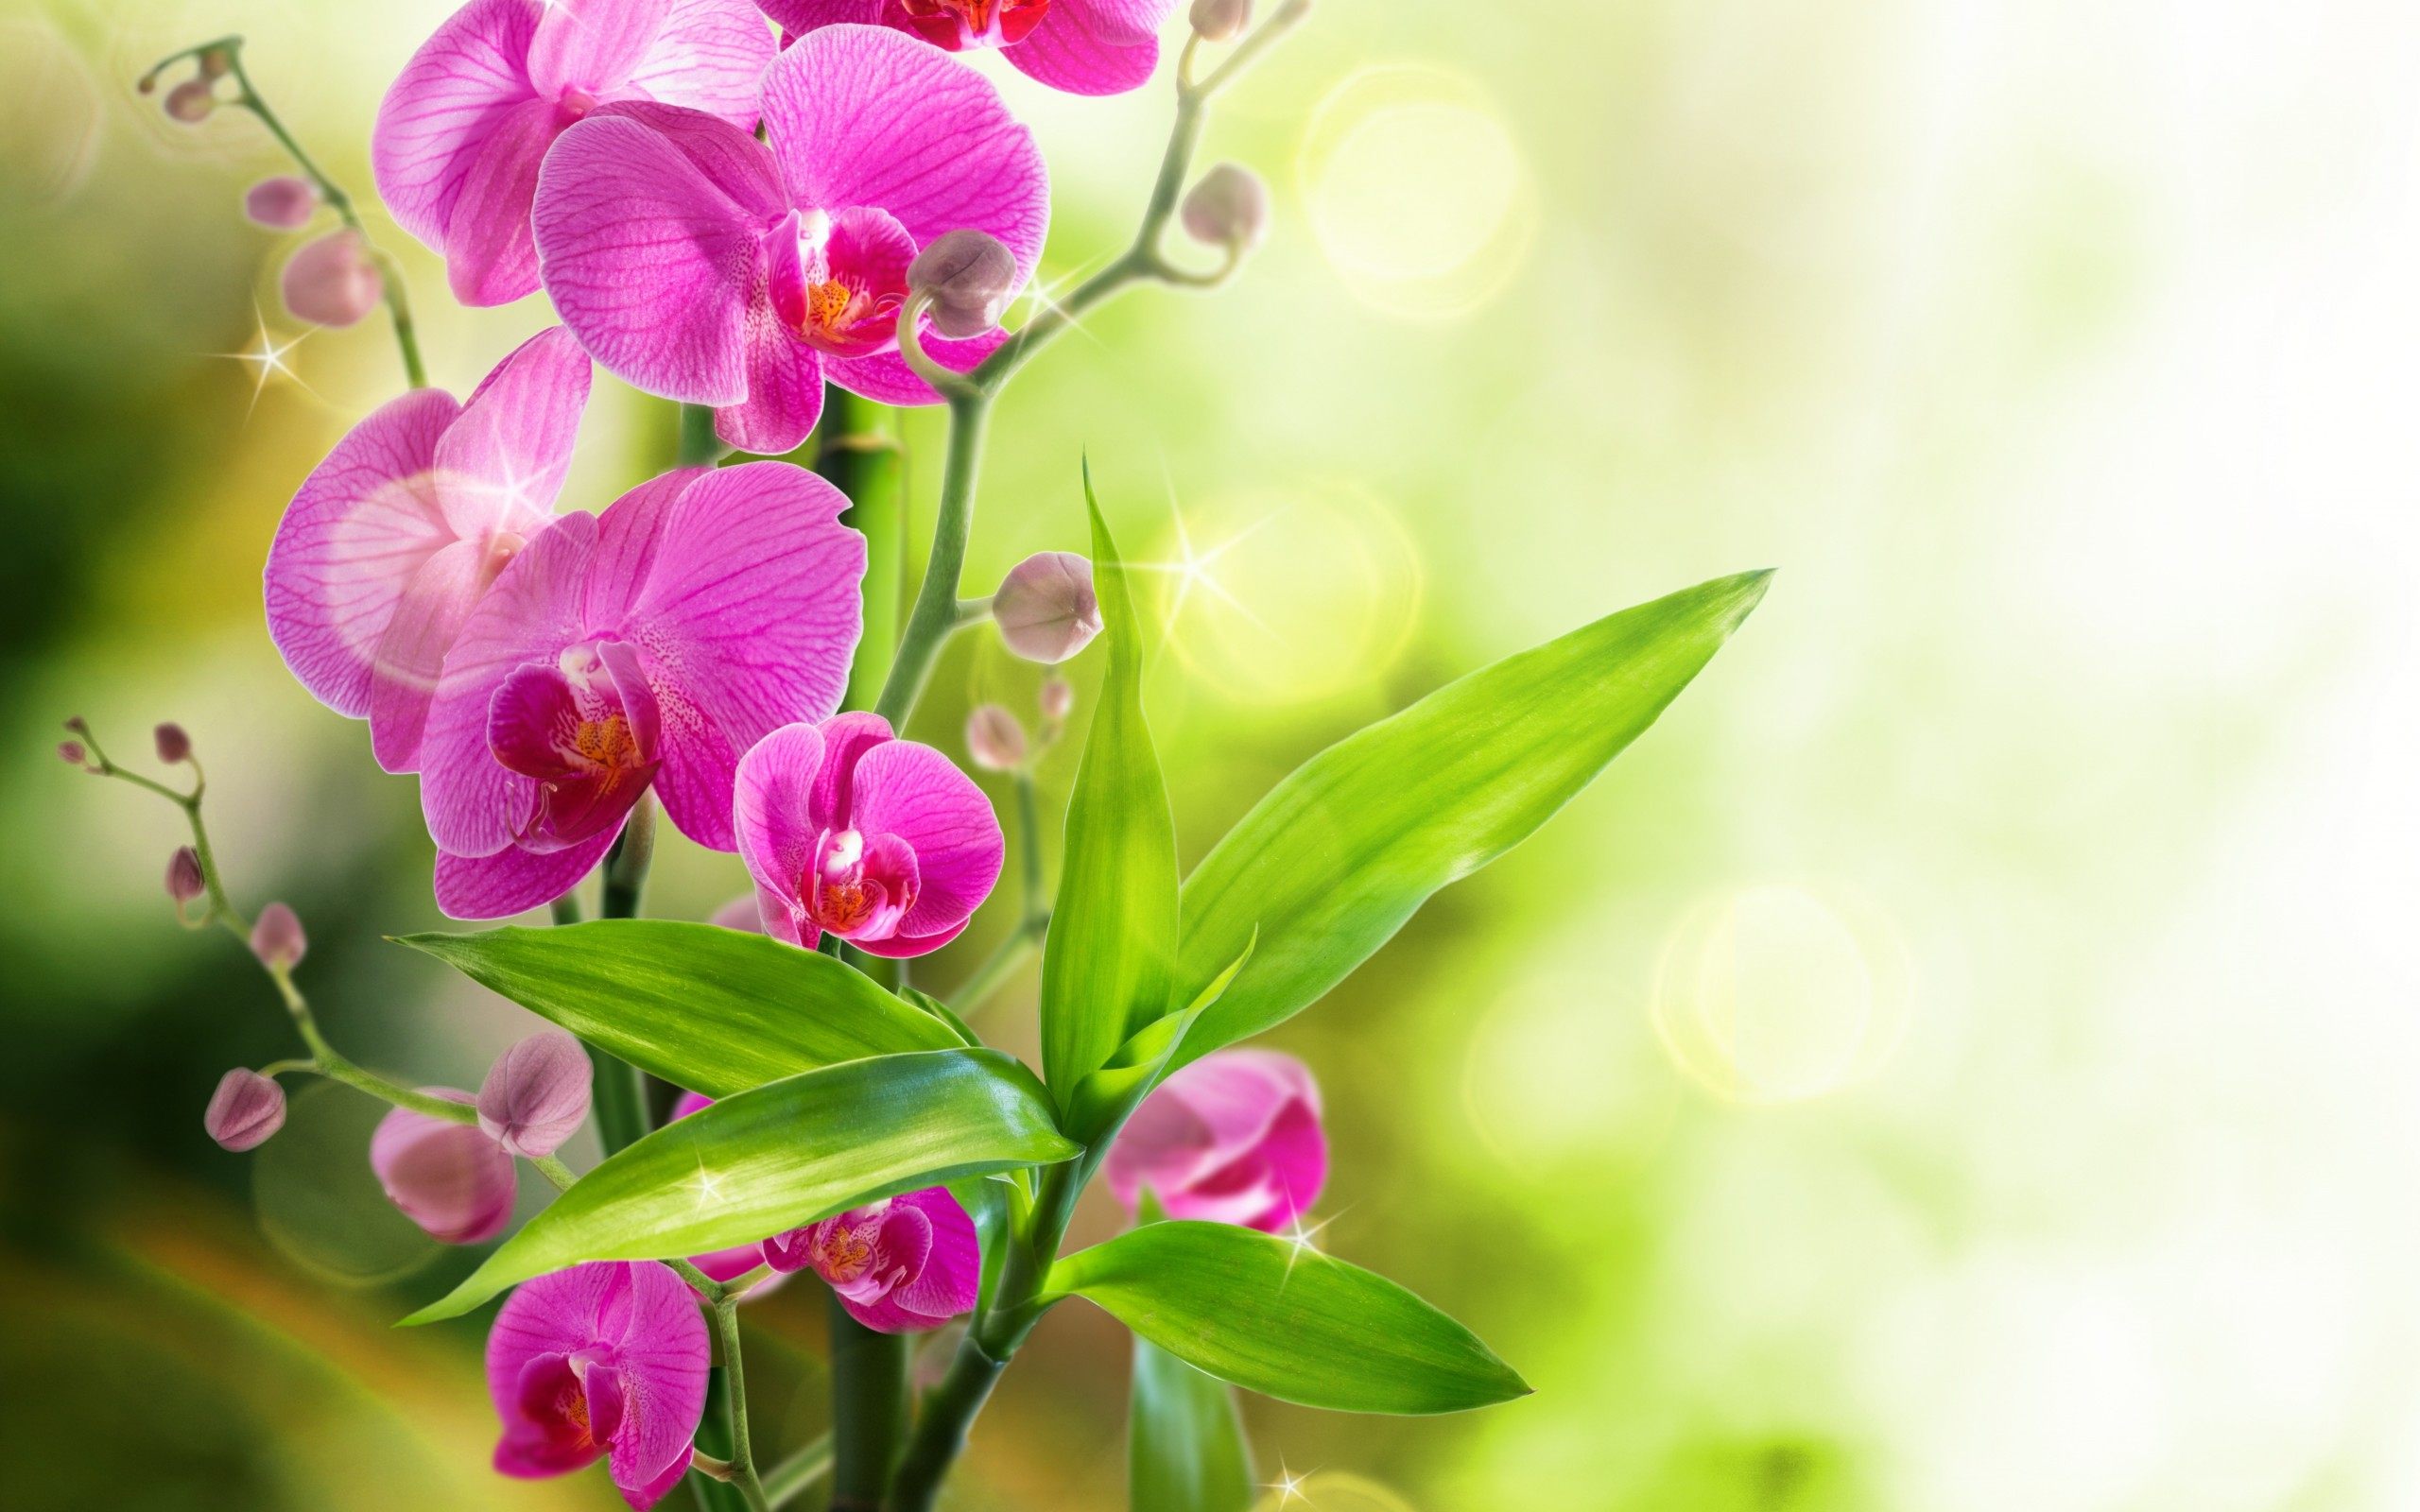 Orchid Flowers Wallpaper HD For Desktop Of Beautiful Flowers